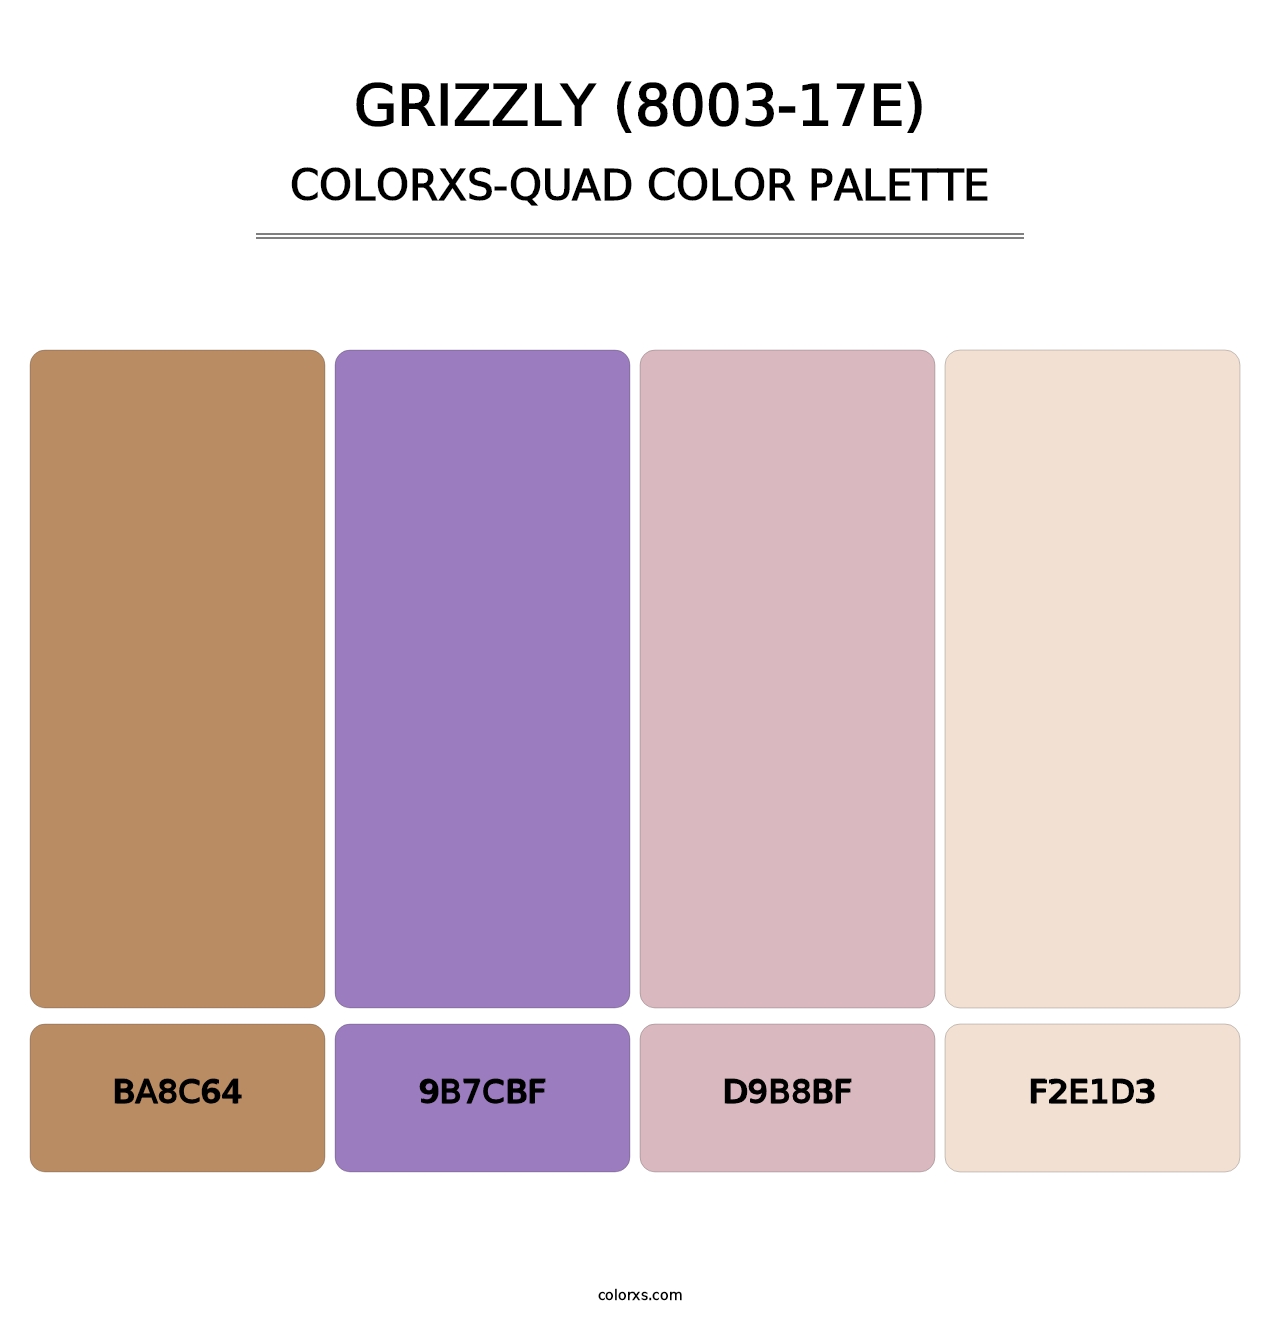 Grizzly (8003-17E) - Colorxs Quad Palette